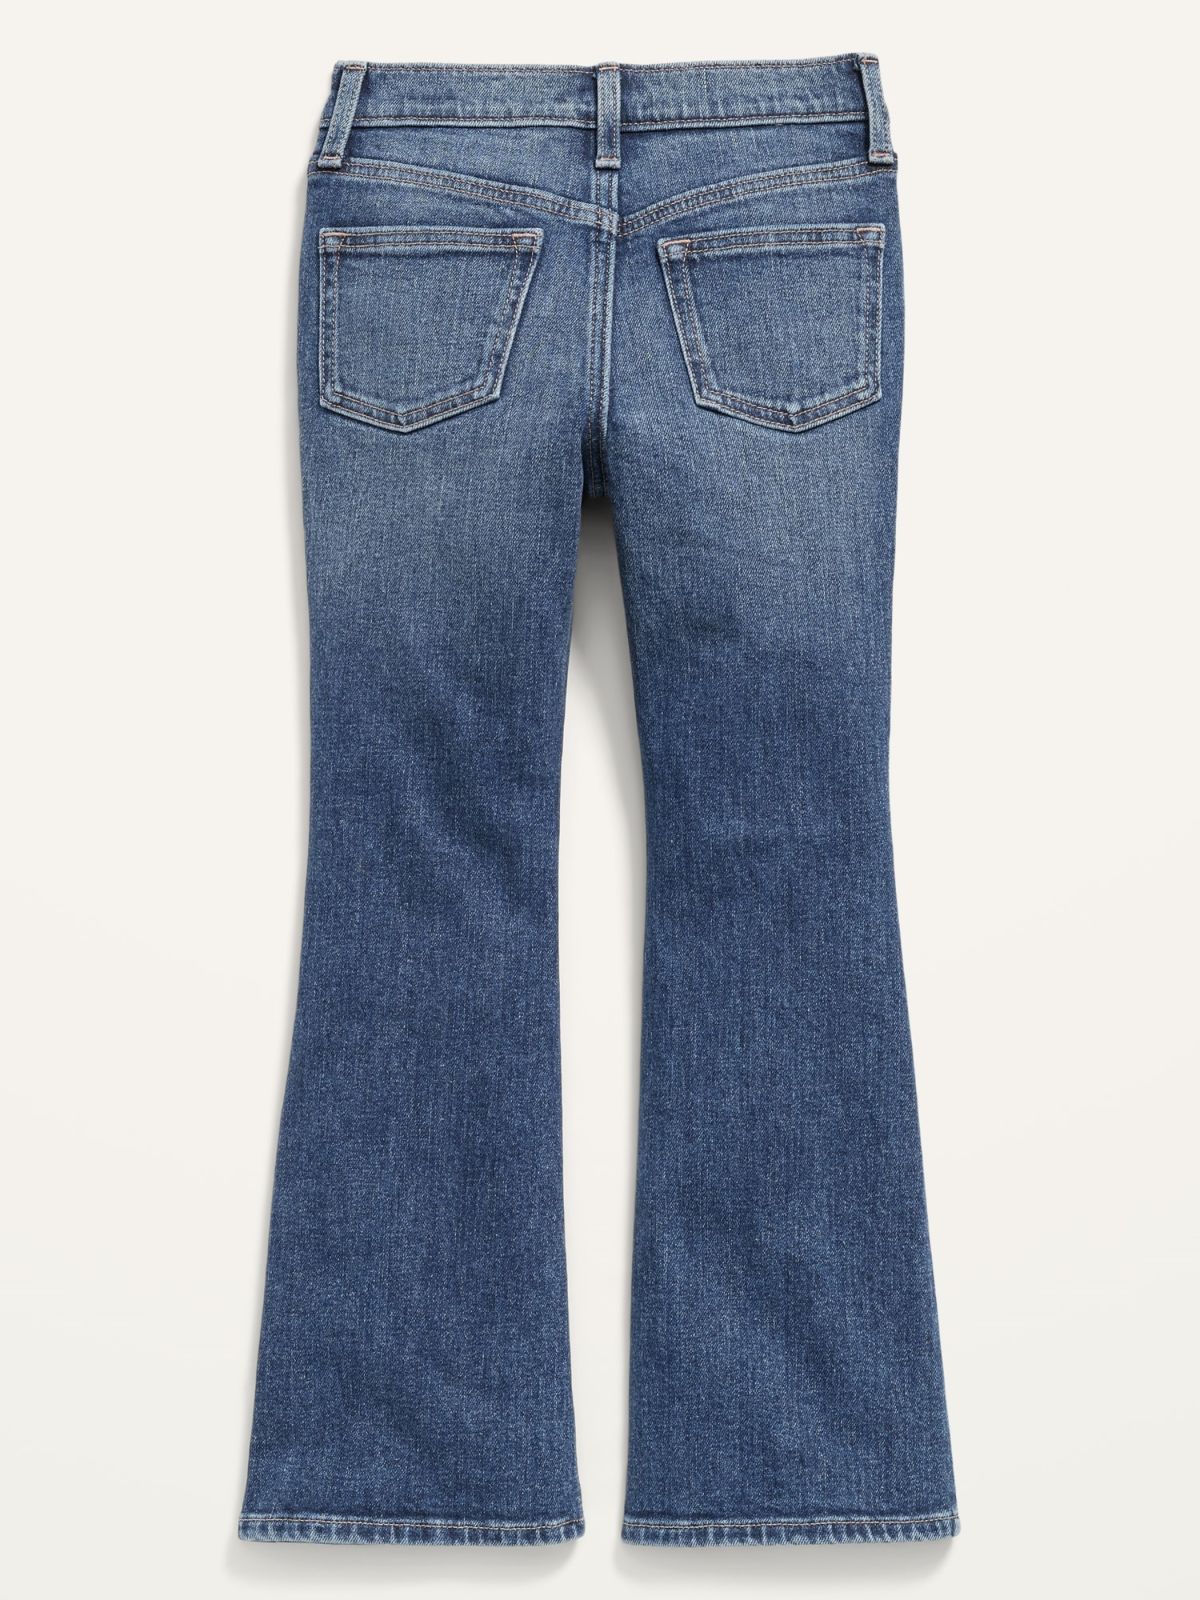  ג'ינס ארוך בגזרה גבוהה של OLD NAVY